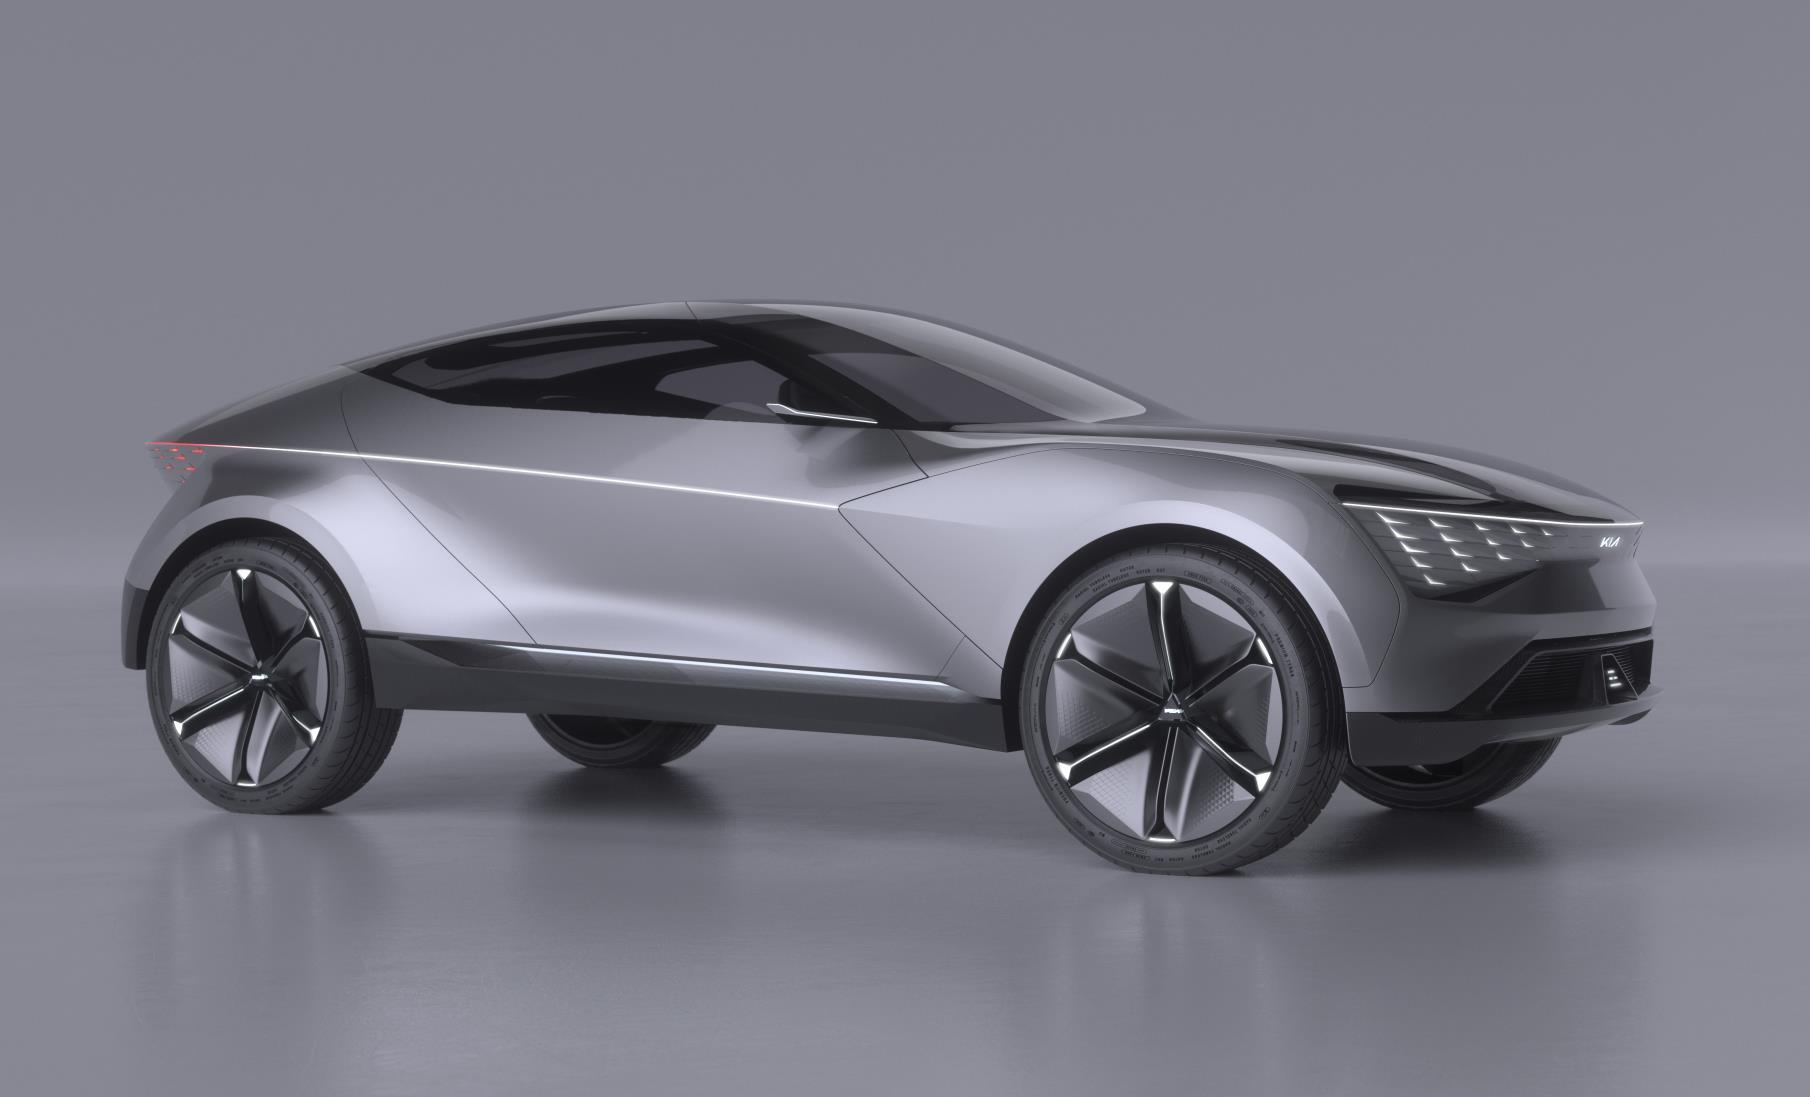 Kia Futuron concept previews future electric vehicle design